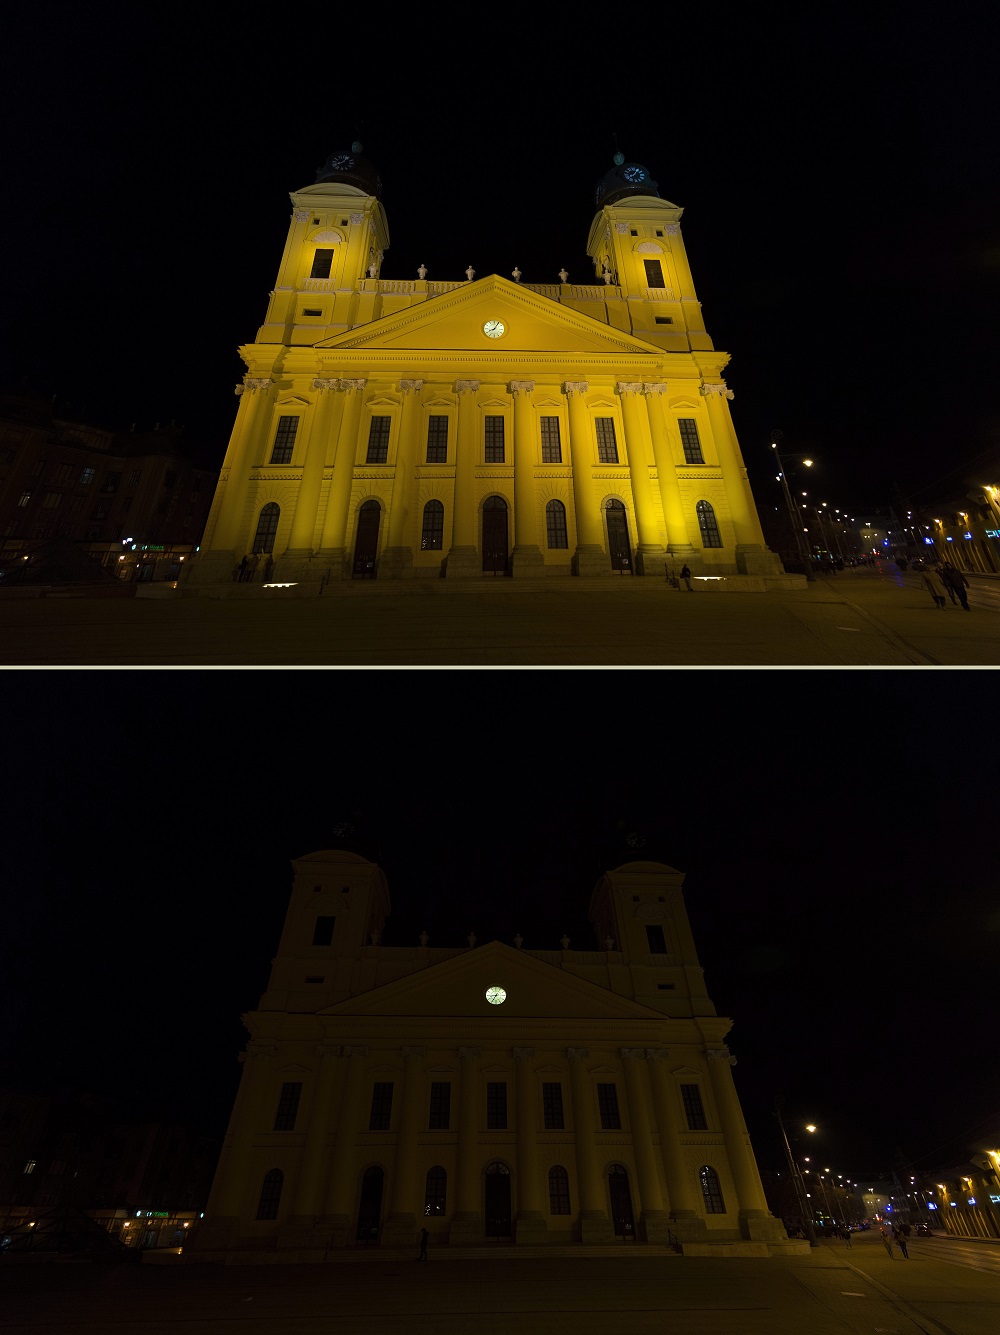 A debreceni református nagytemplom a Föld órája nevû akció elõtt, kivilágítva (felül), és az akció idején, kivilágítatlanul 2015. március 28-án este / Fotó: MTI